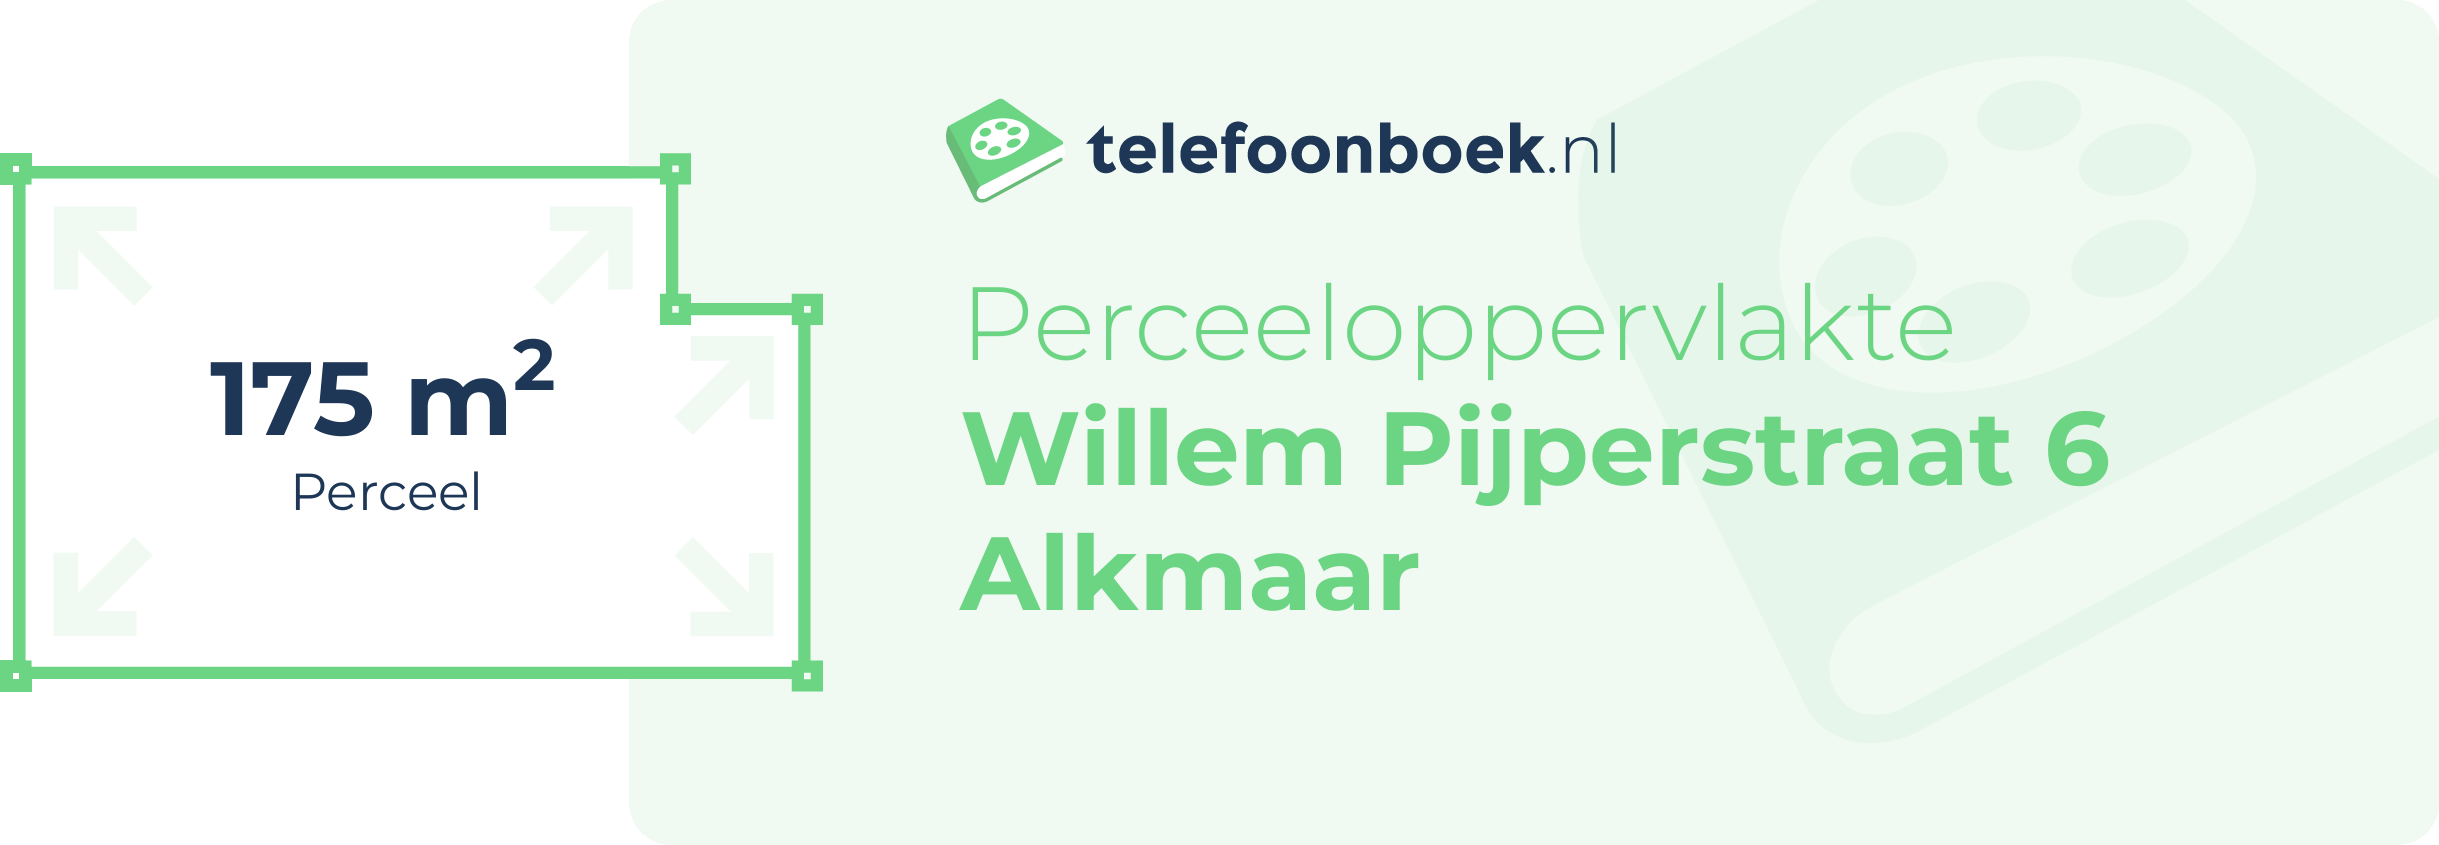 Perceeloppervlakte Willem Pijperstraat 6 Alkmaar